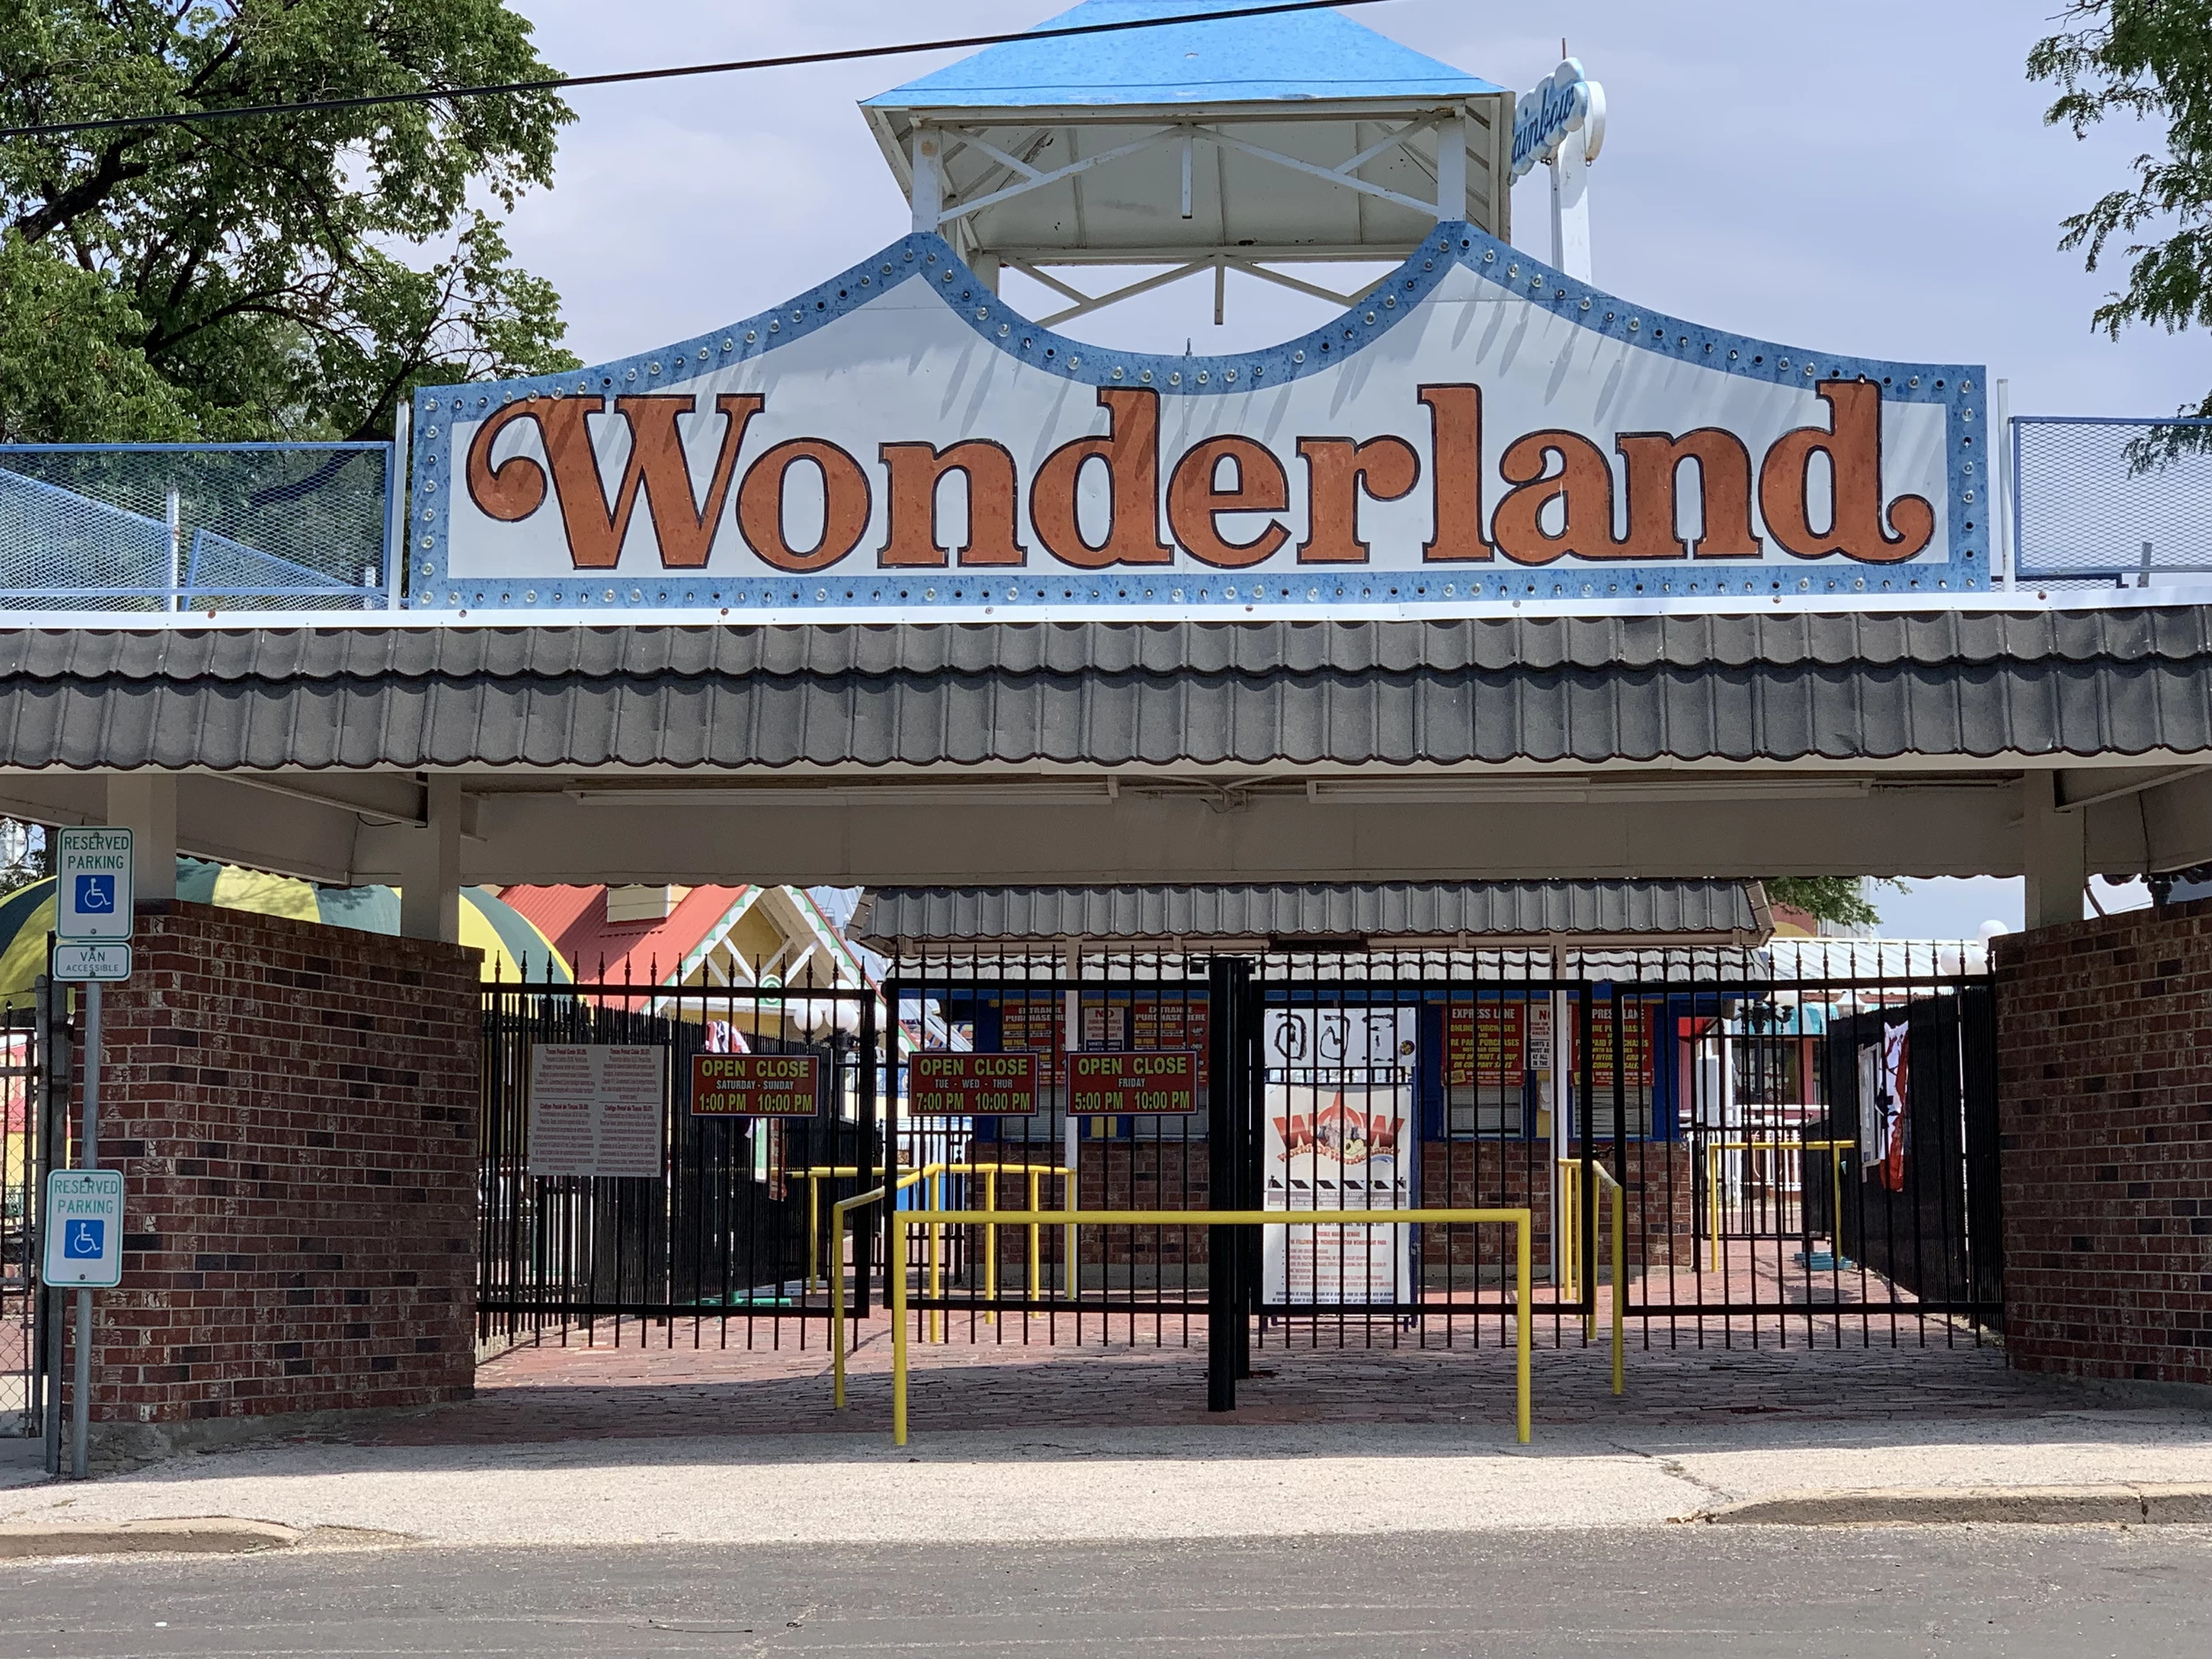 When Does Wonderland Park Open?